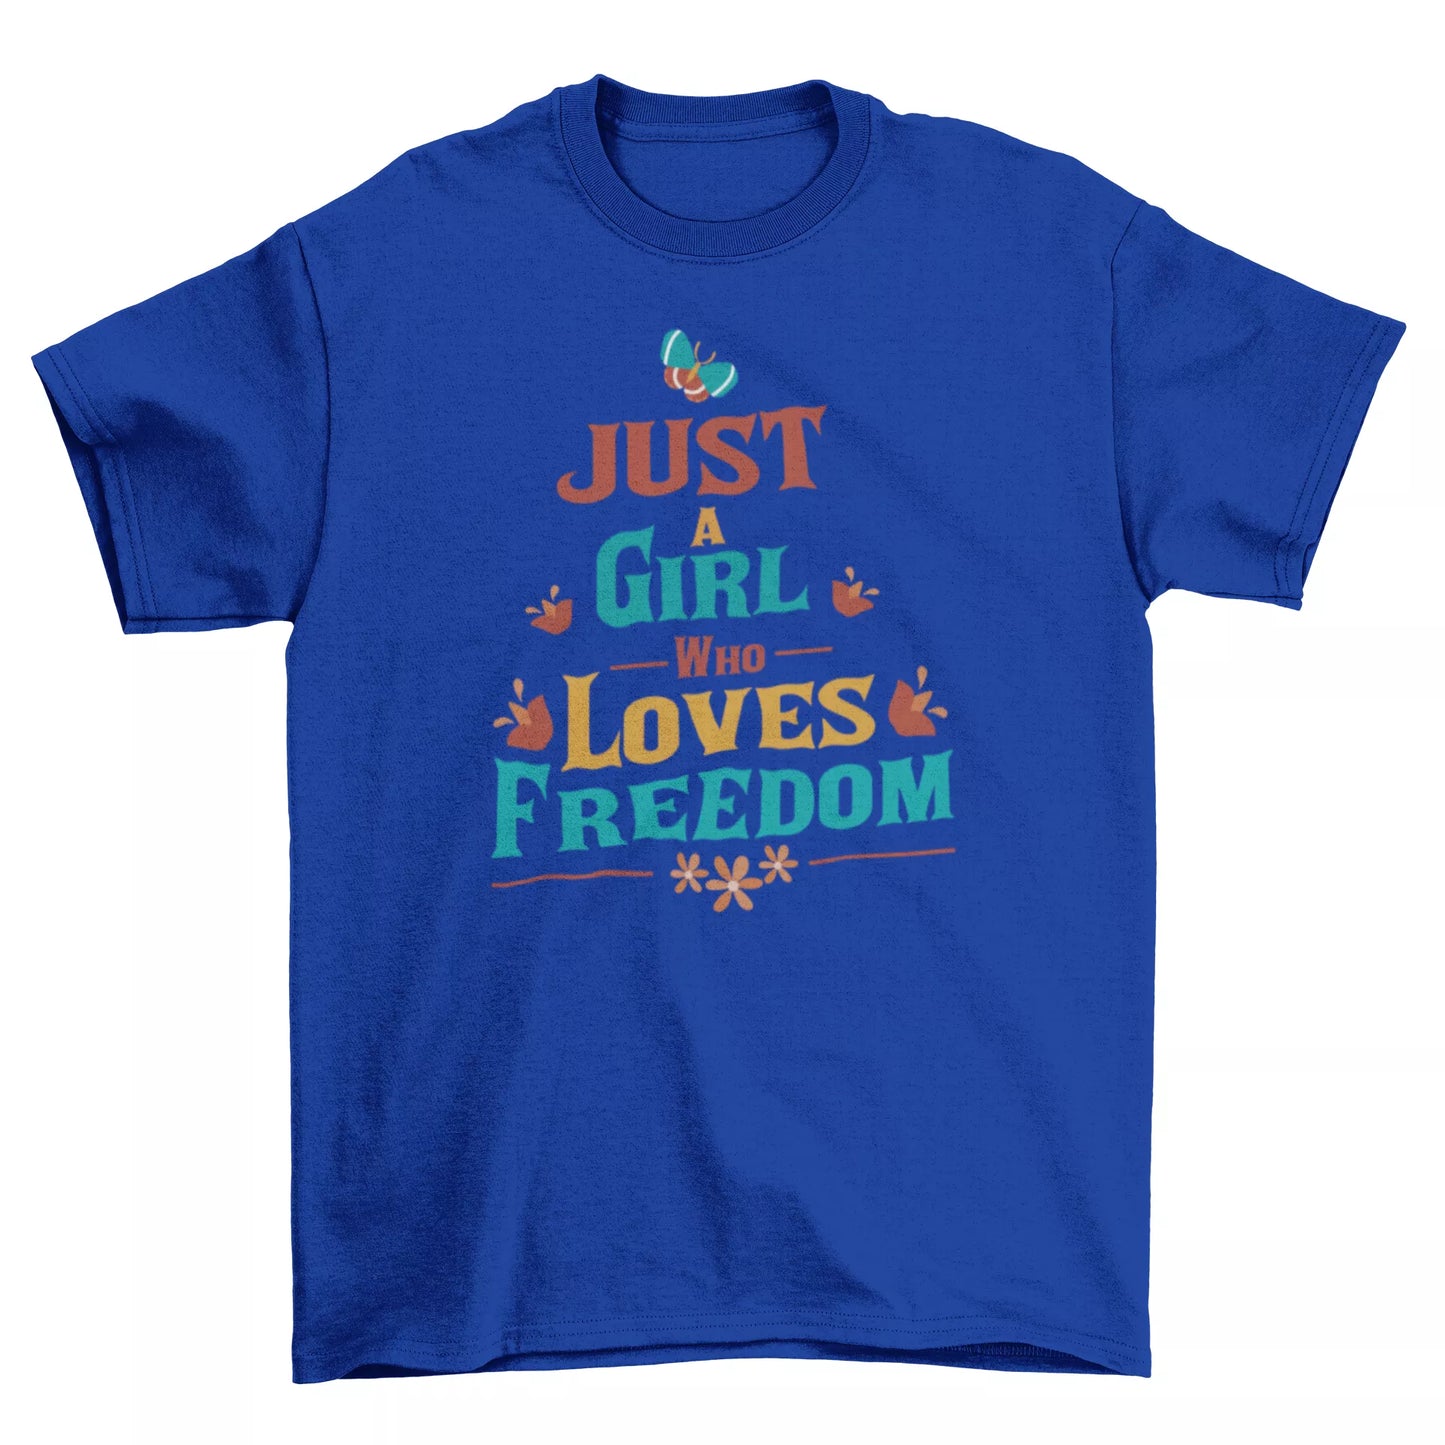 Freedom Loving Girl T-Shirt